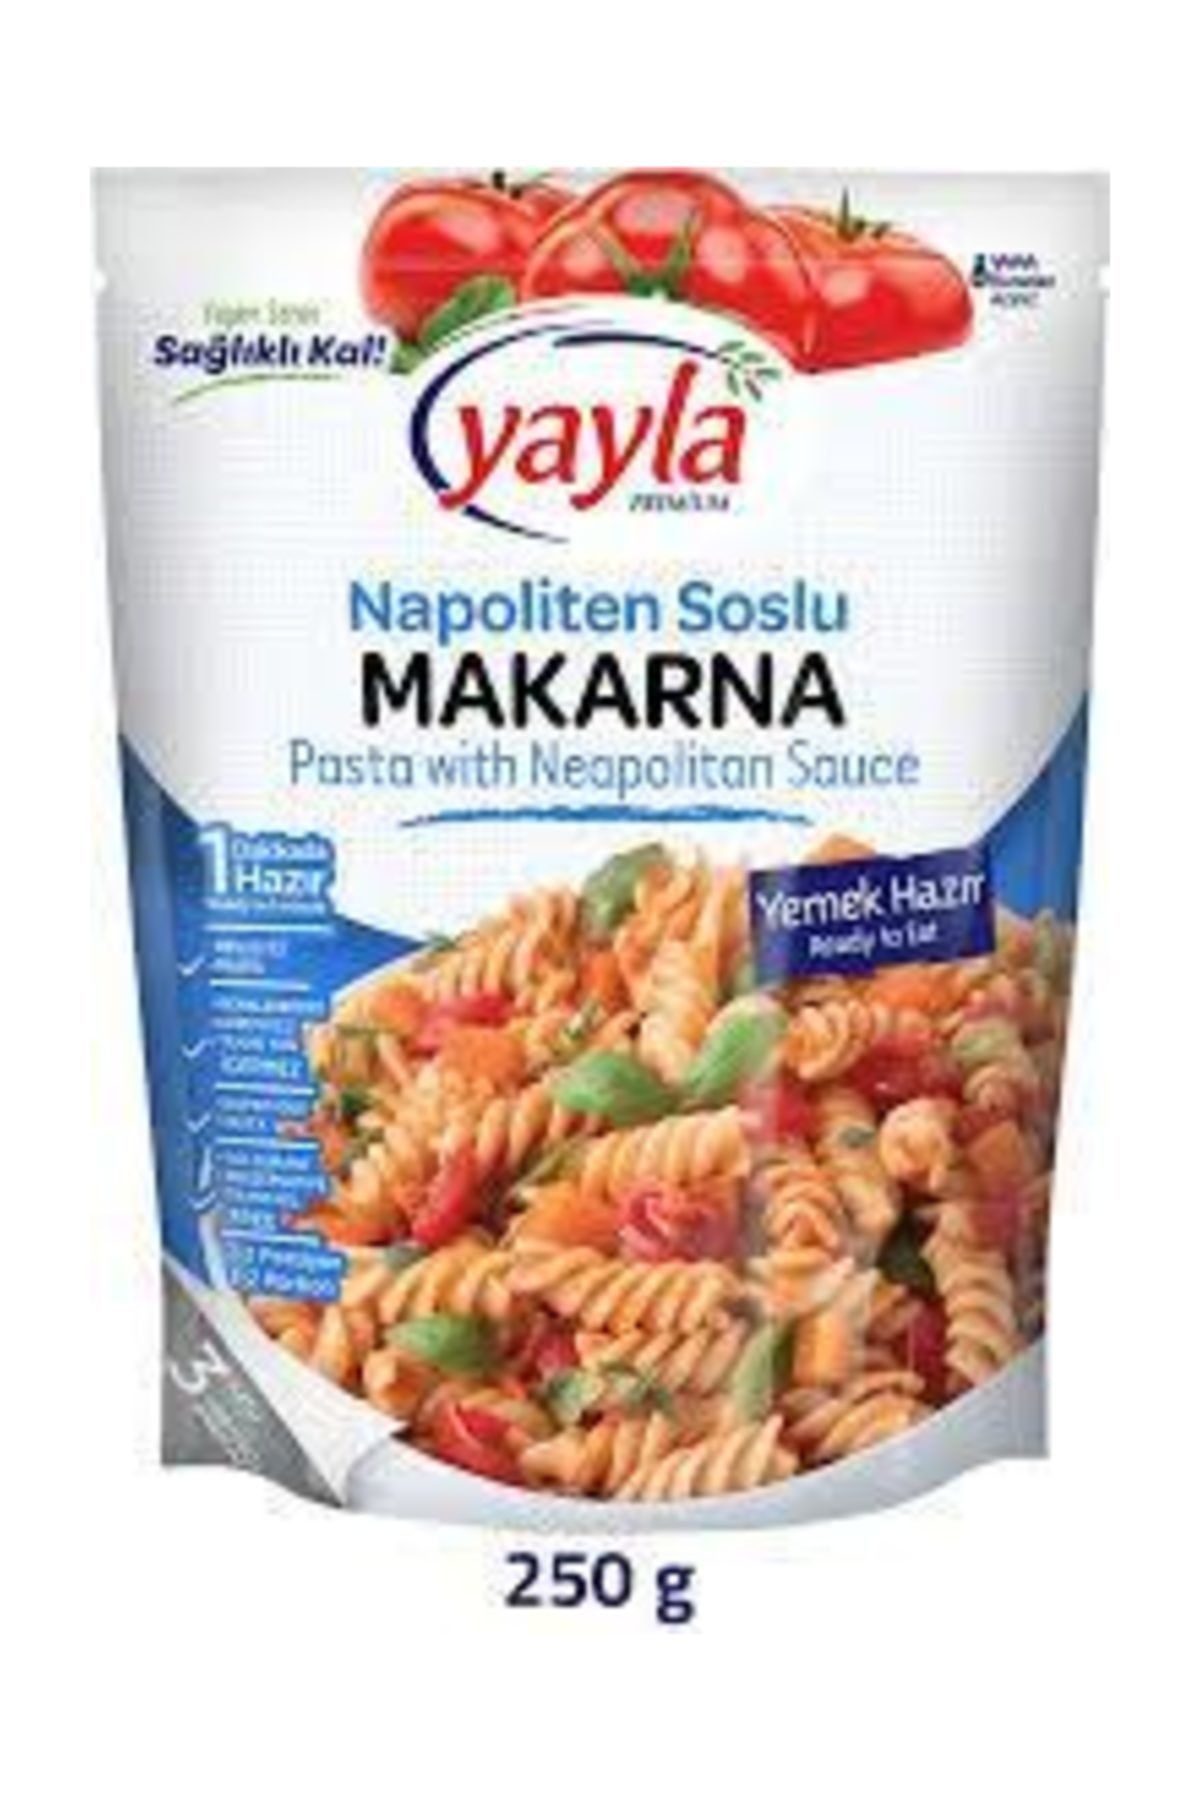 Yayla Premium Napoliten Soslu Hazır Makarna 250 gr